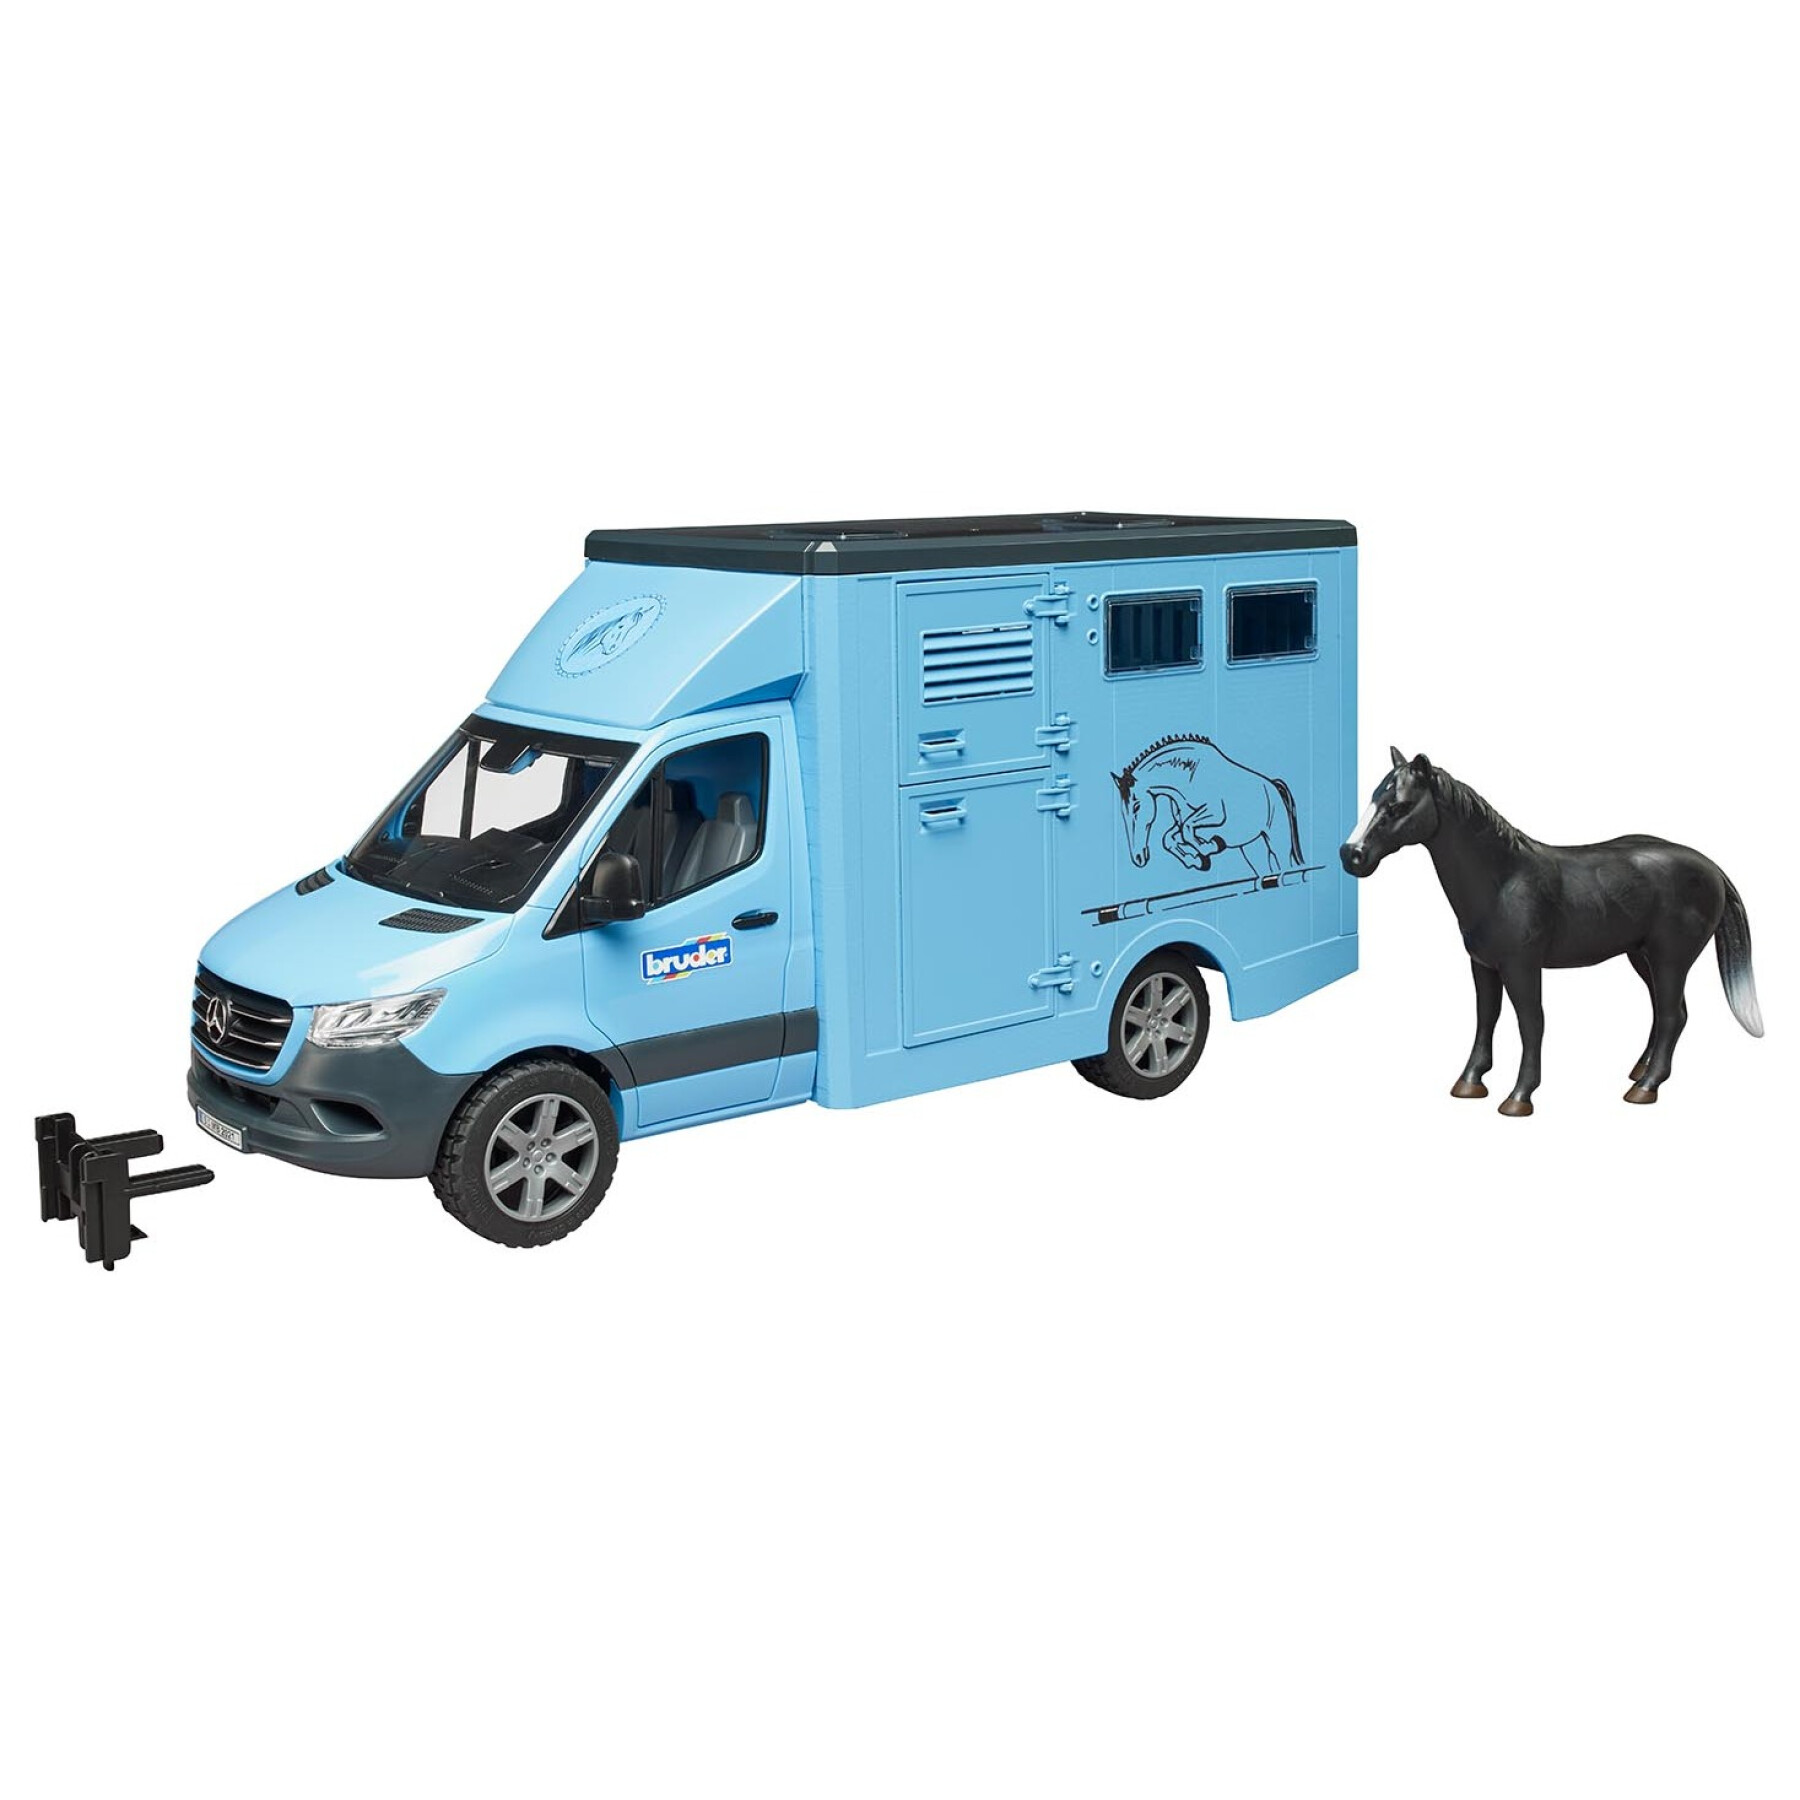 Car games - sprinter with horse transporter+horse Bruder MB